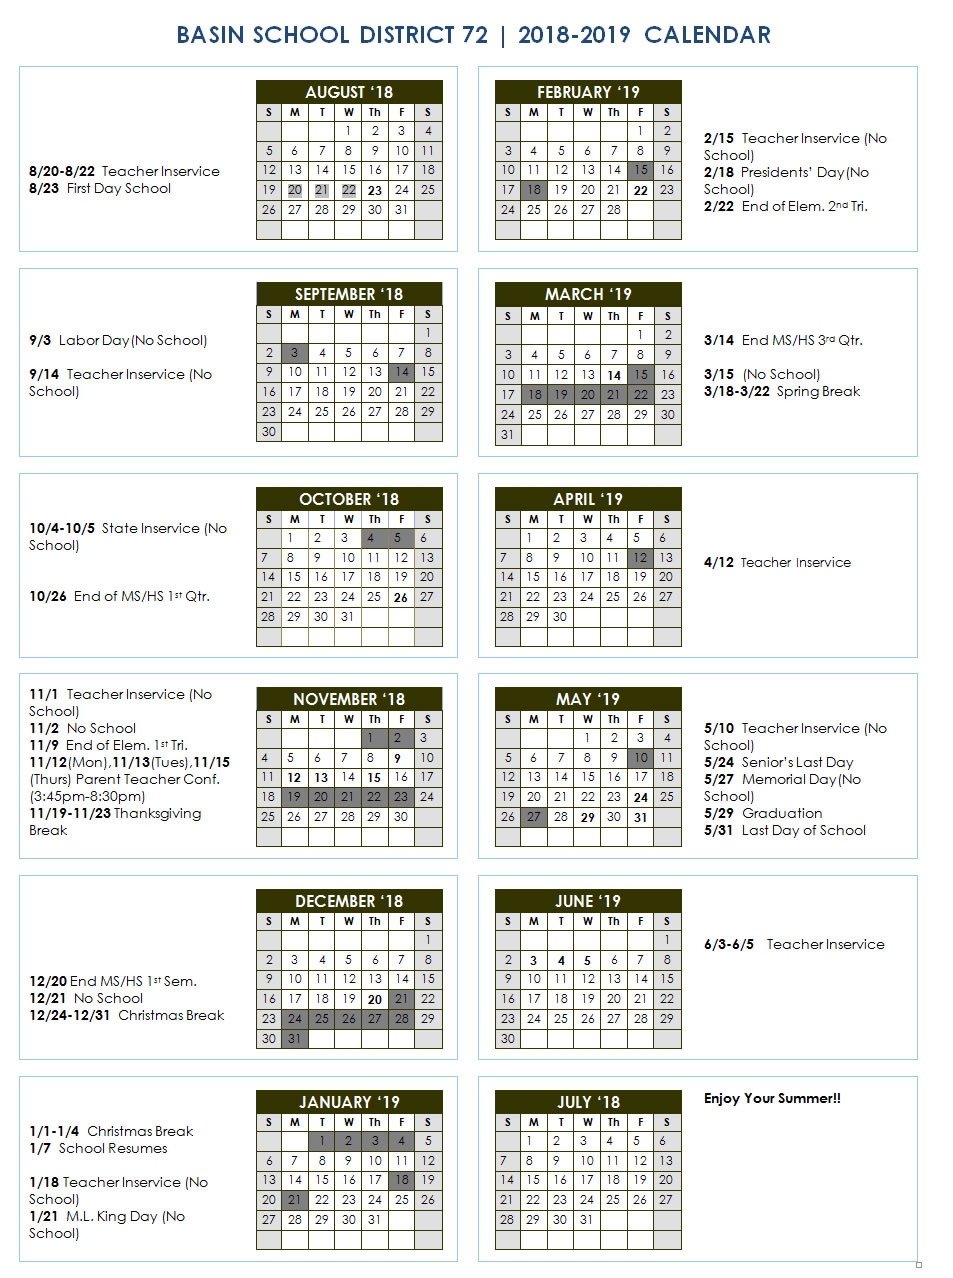 boise-school-district-calendar-qualads